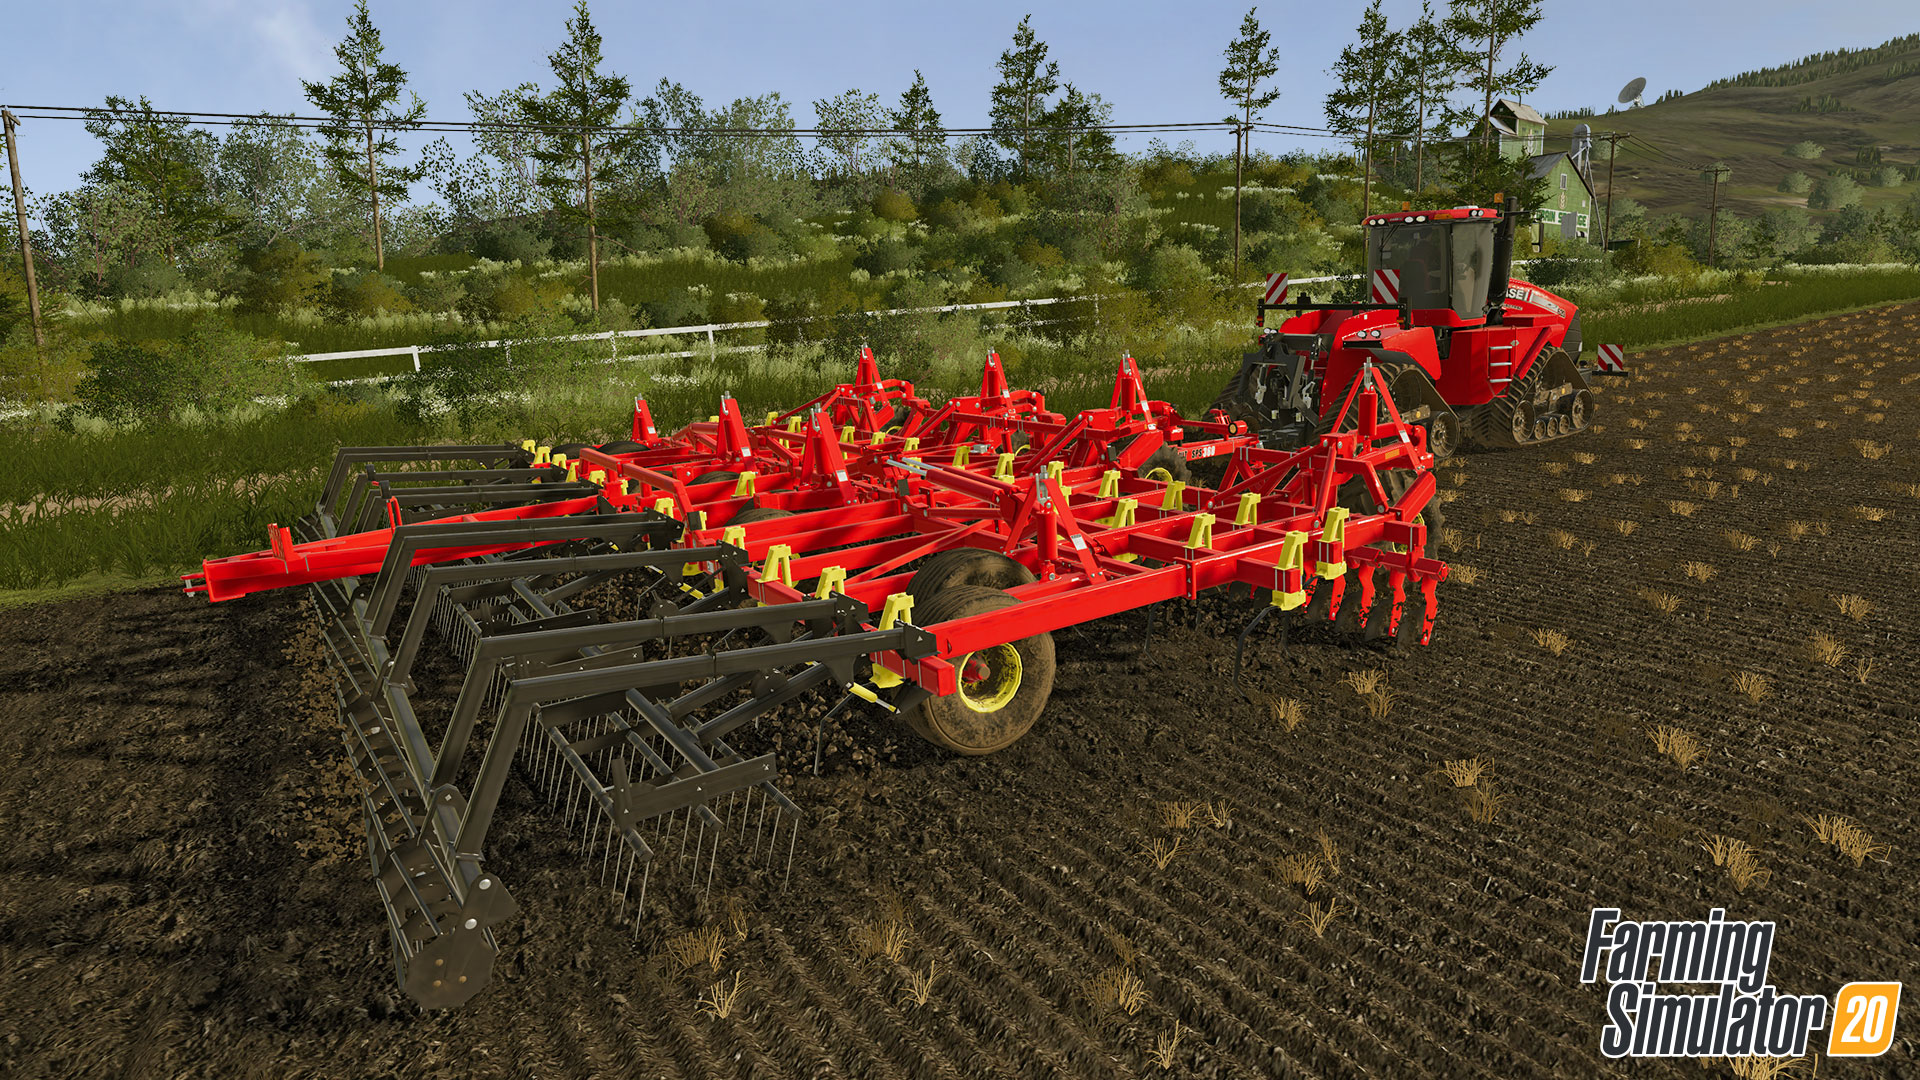 Farming Simulator 20 : De nouveaux équipements Bourgault sont